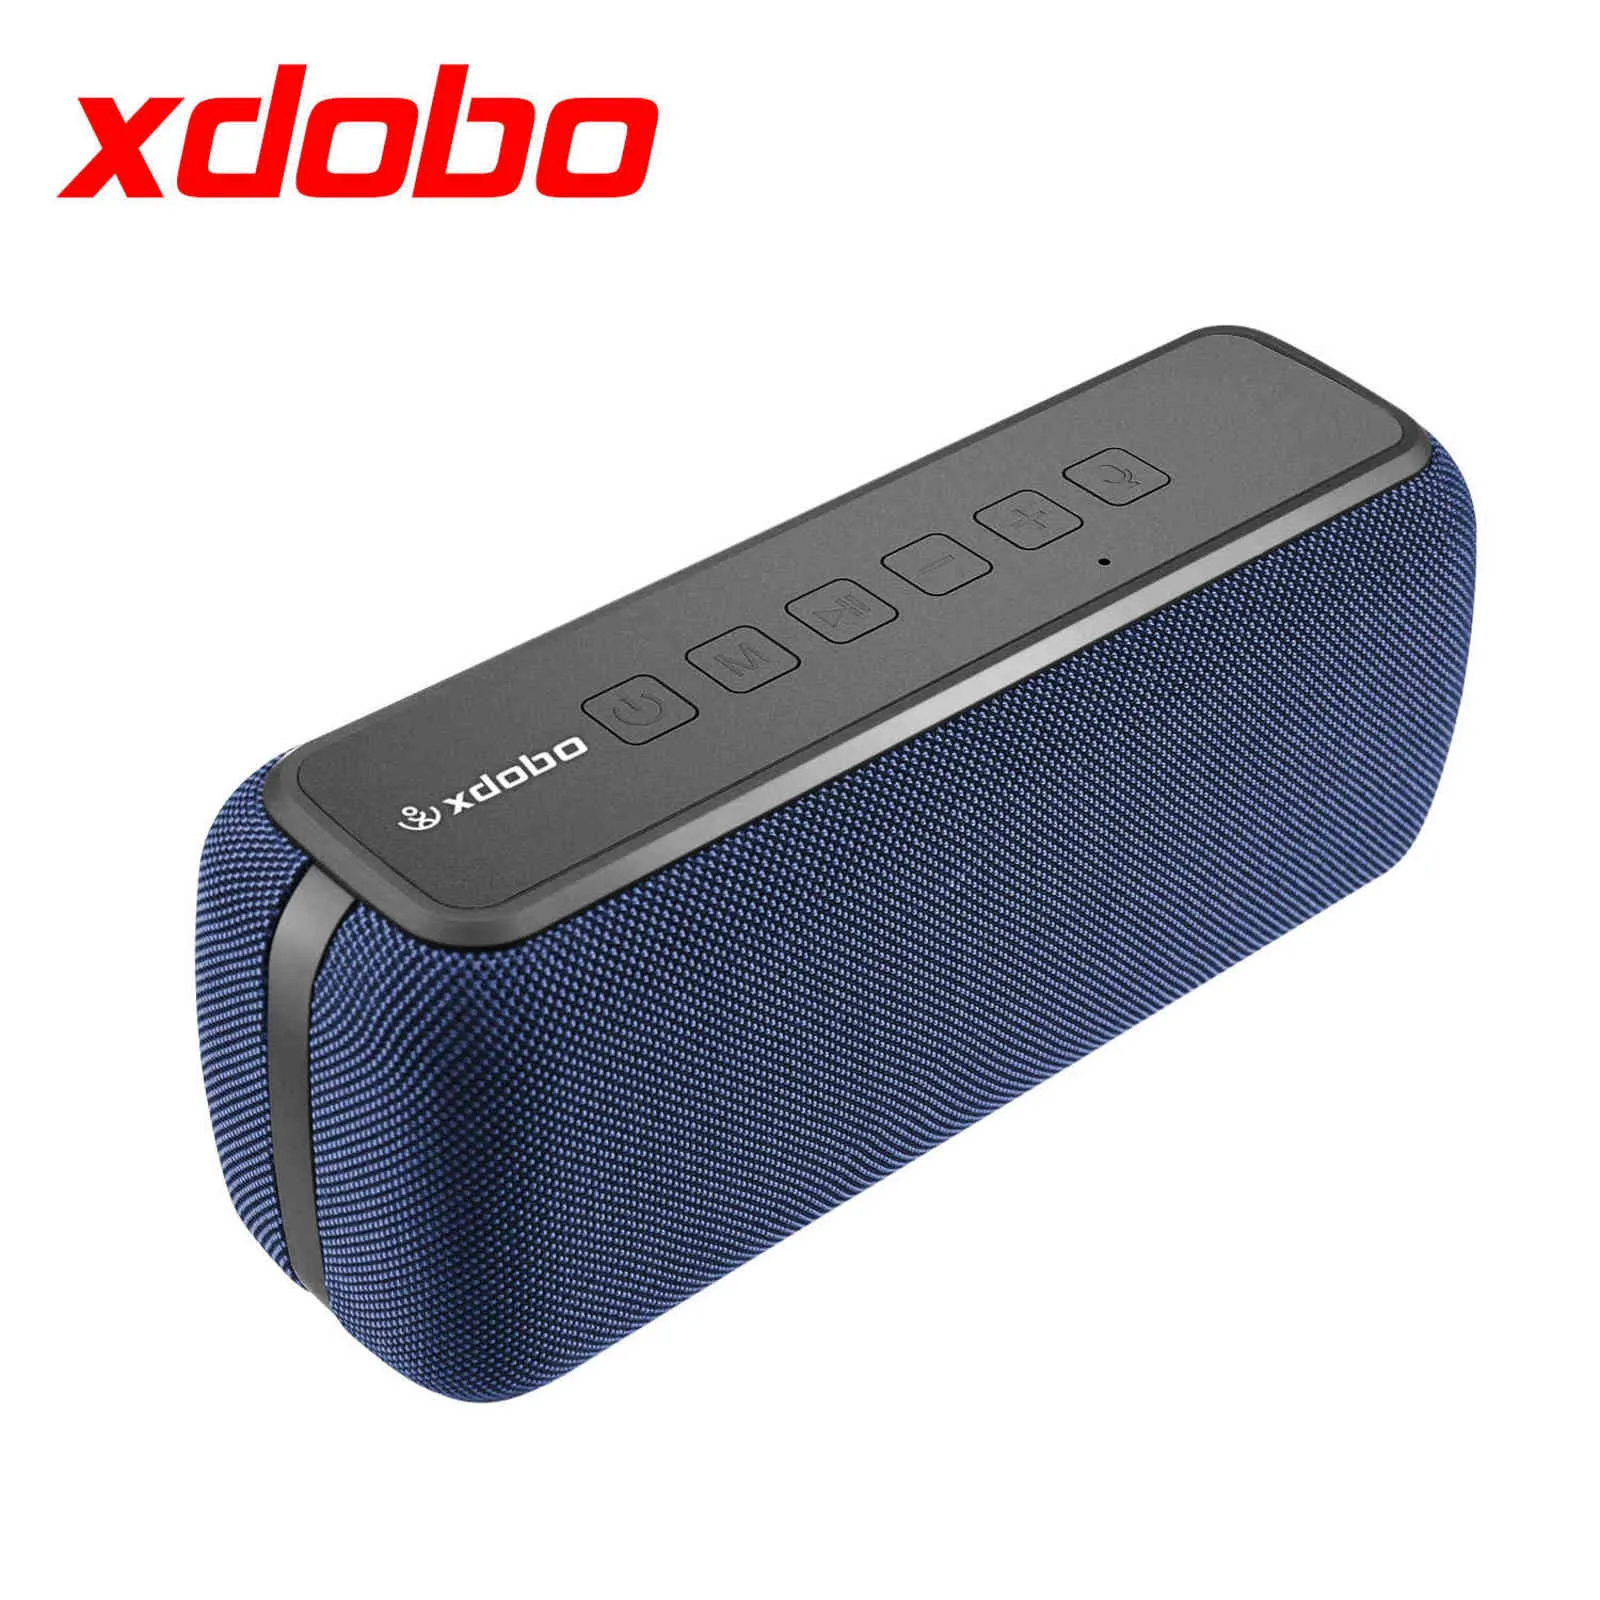 XDOBO X8 60W Leistungsstarke Tragbare Outdoor Wireless Bluetooth Lautsprecher TWS Hifi Heimkino System Musik Sound Box Soundbar Für TV H1111